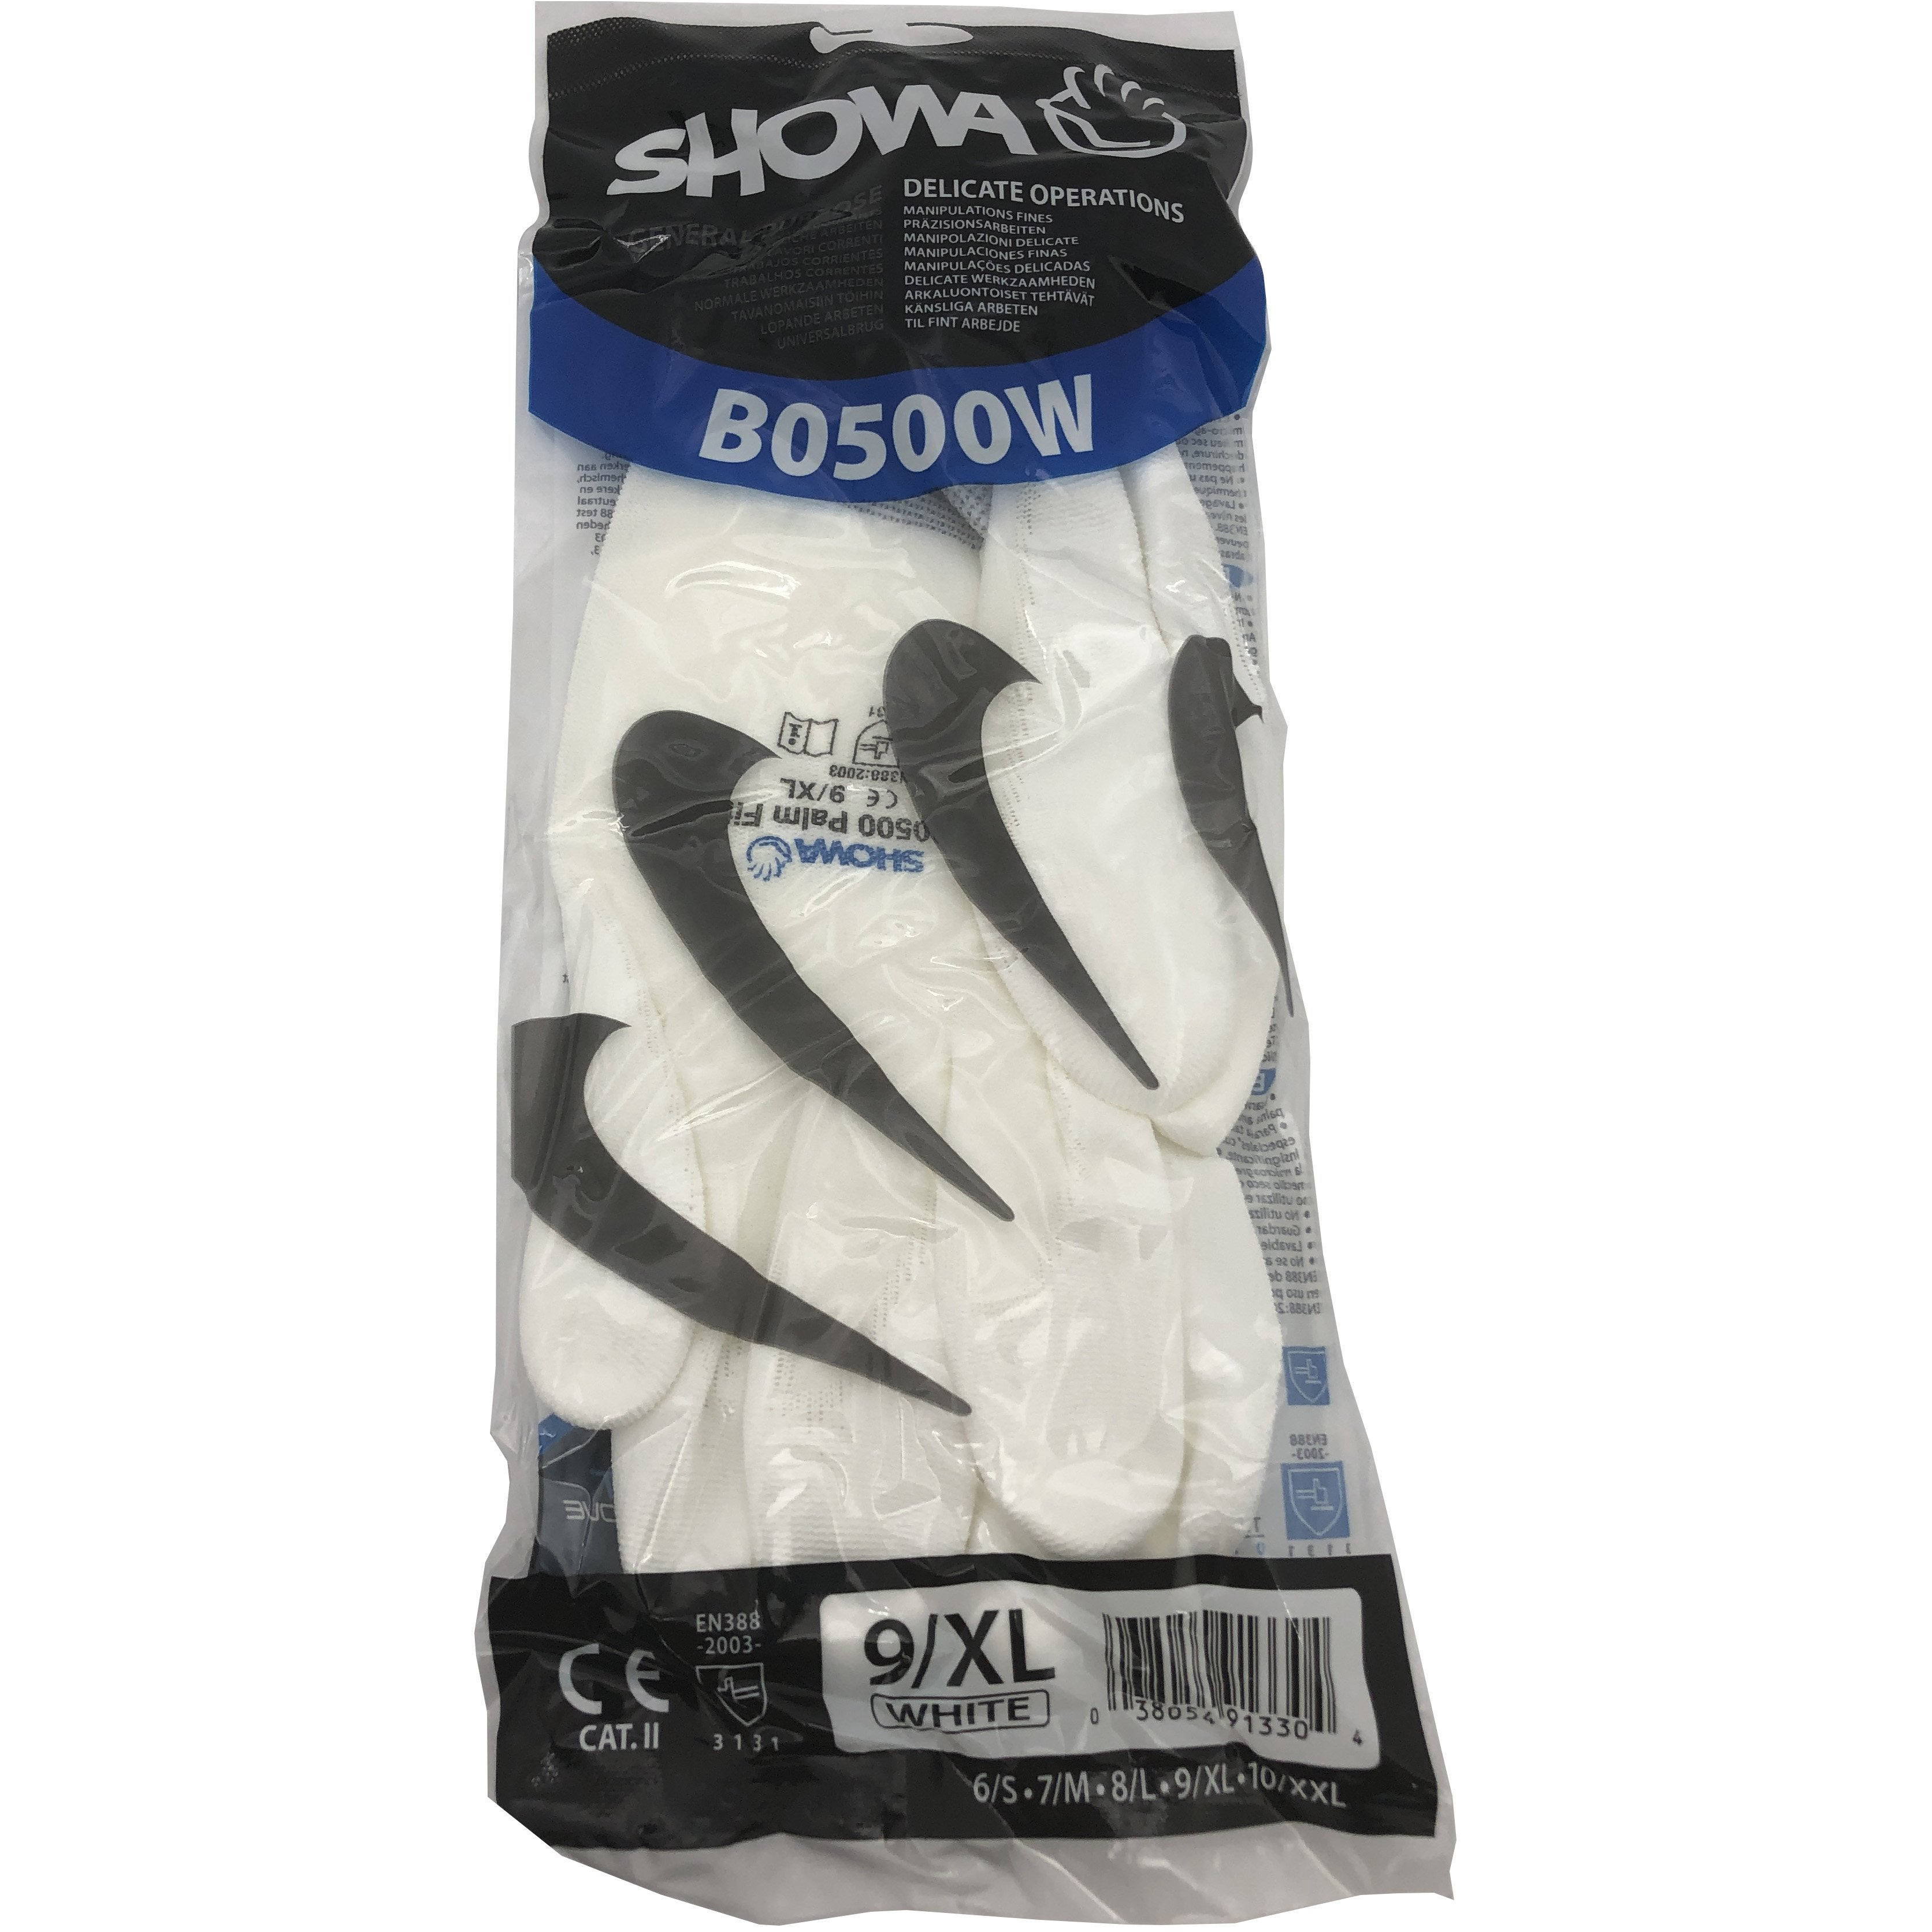 Showa XL Gloves